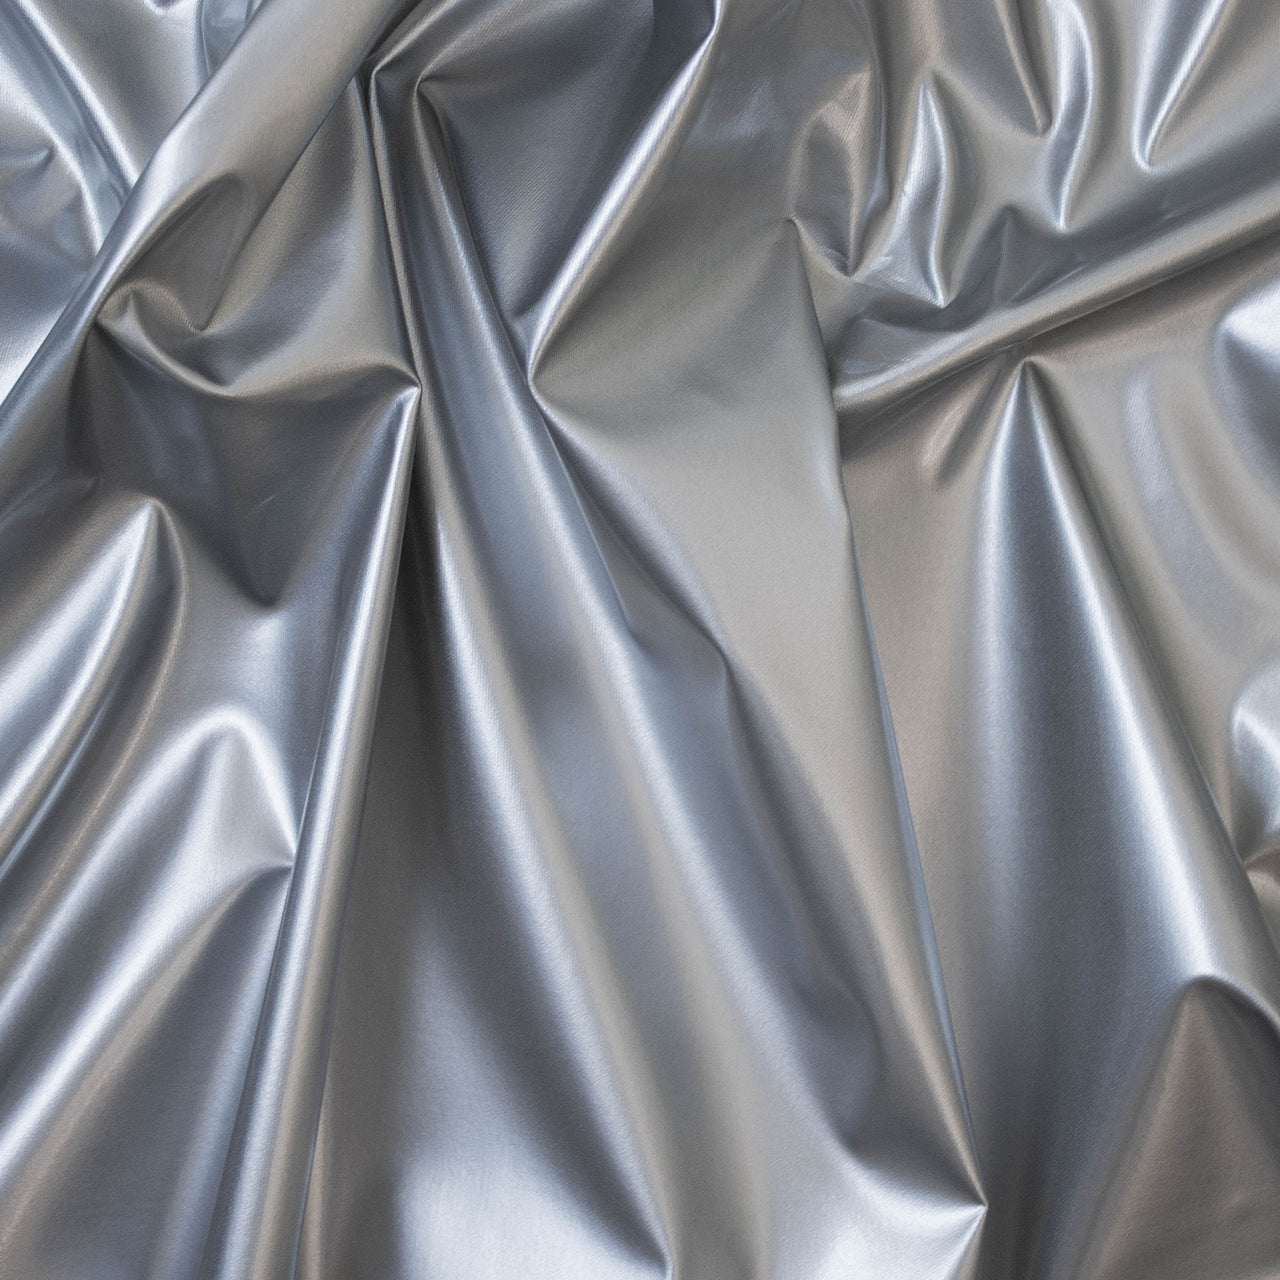 Silber glänzender PVC-Stretchstoff – 1-Wege-Naturstretch – PU-beschichtet